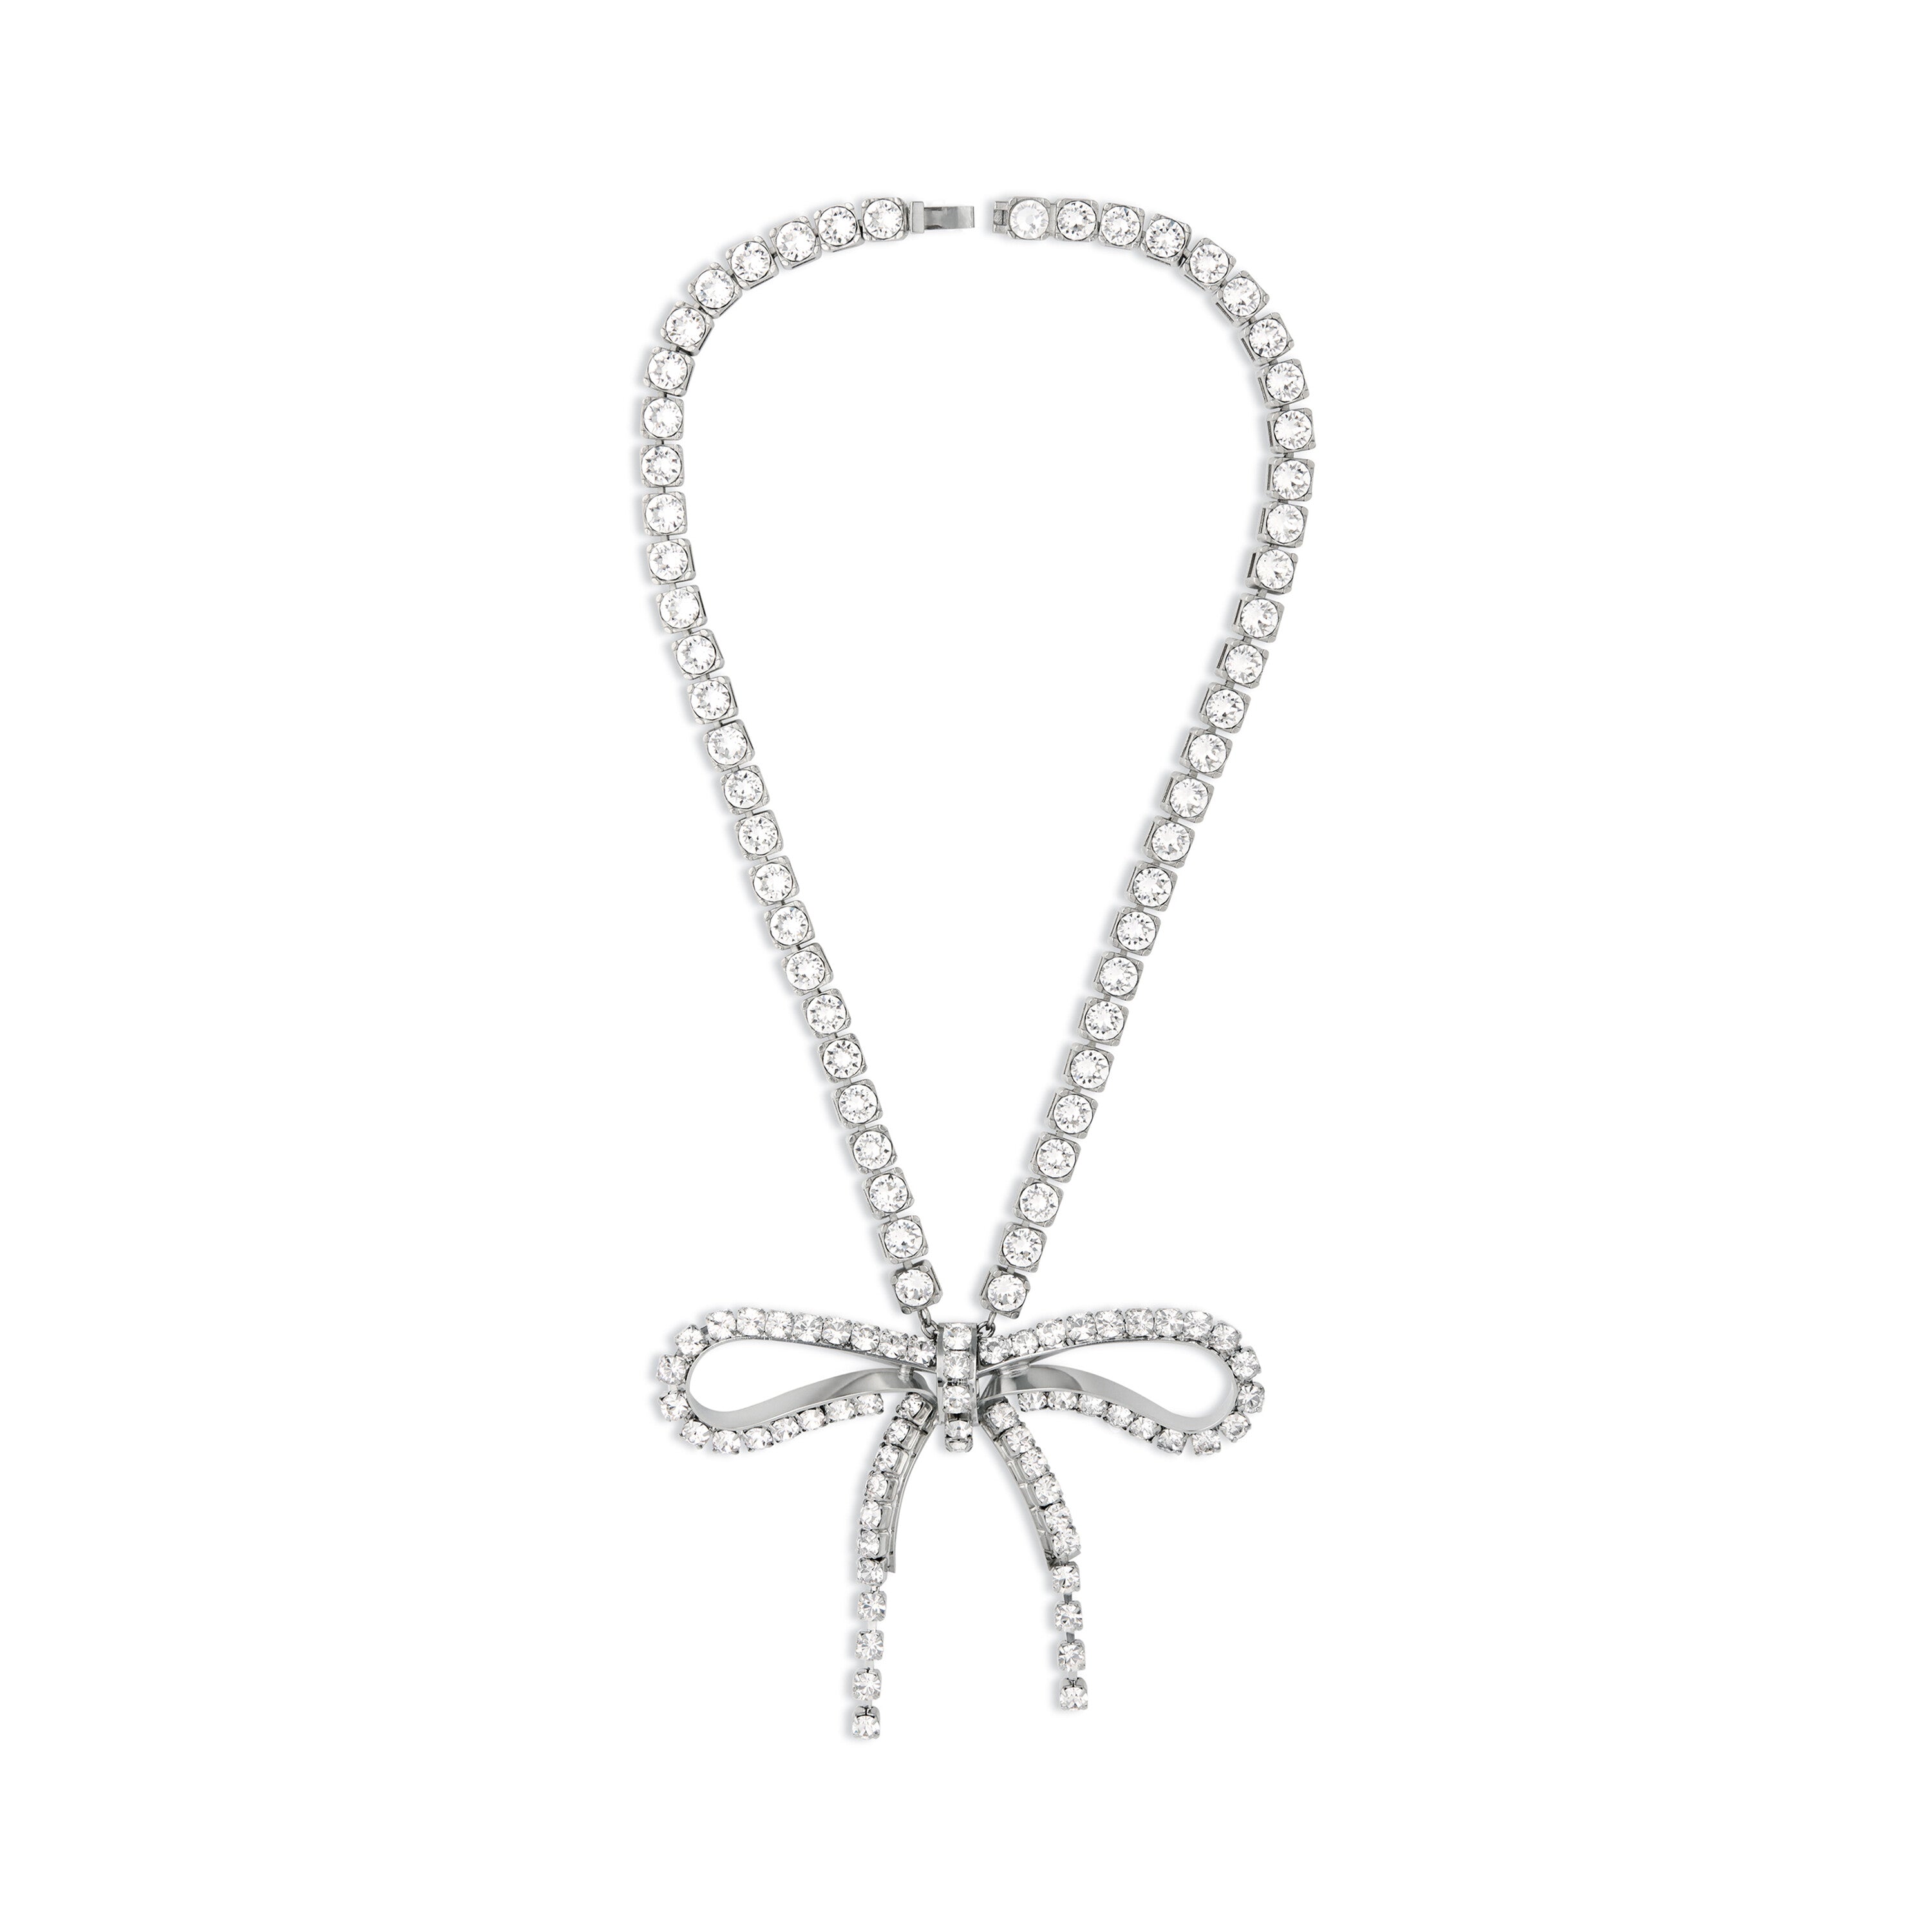 BALENCIAGA [バレンシアガ] / crystal ribbon necklace[クリスタル リボン ネックレス]